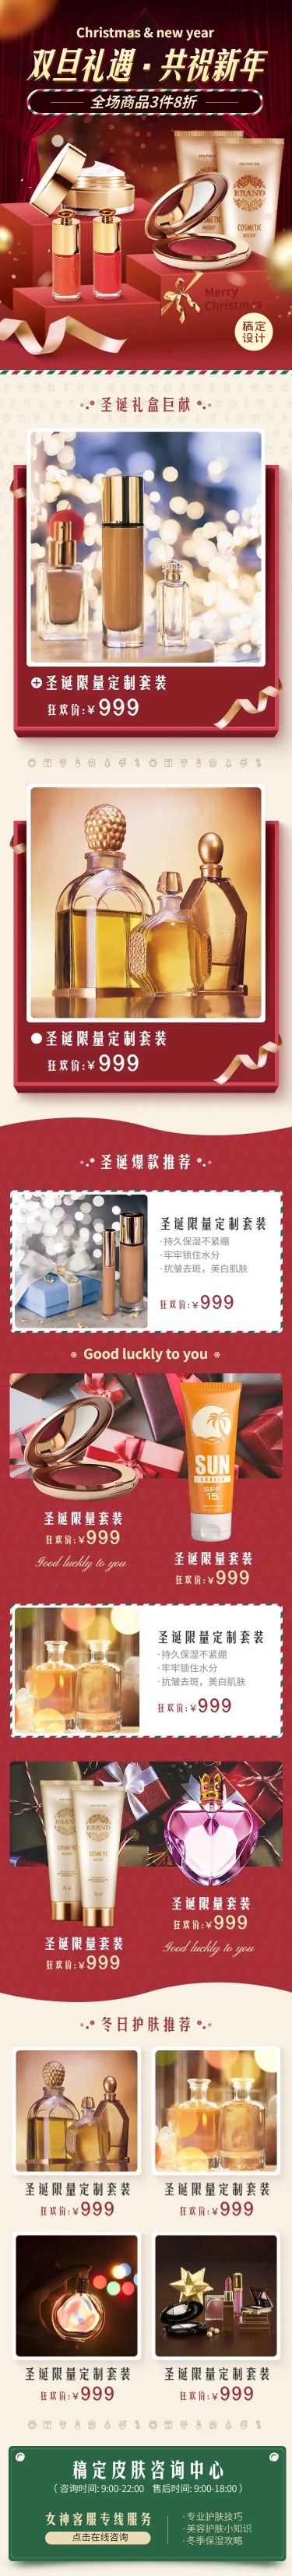 H5长页圣诞节双旦礼遇美妆彩妆产品推广活动电商购物节